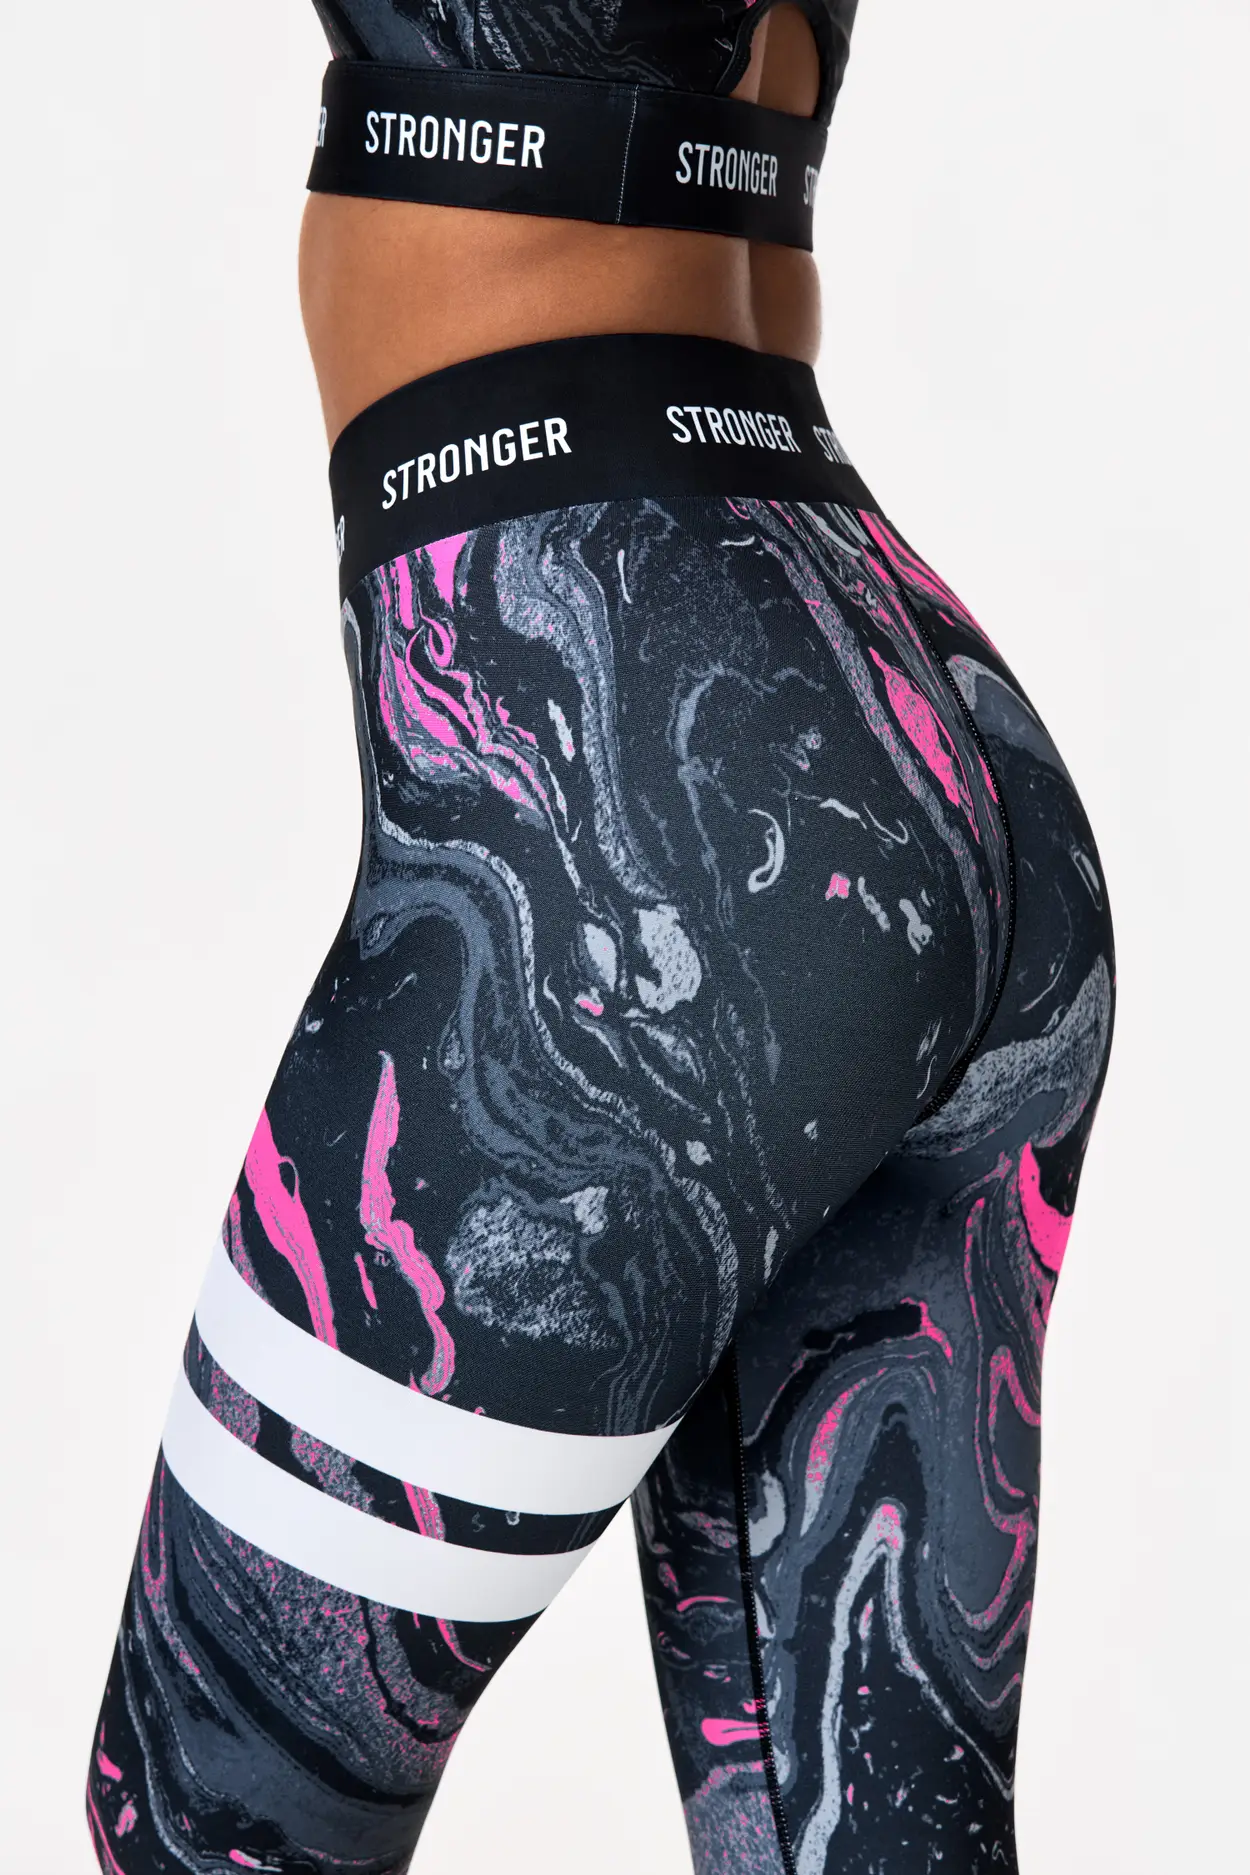 Women Cotton Blend Gym Legging High waist 510 - Pink Print